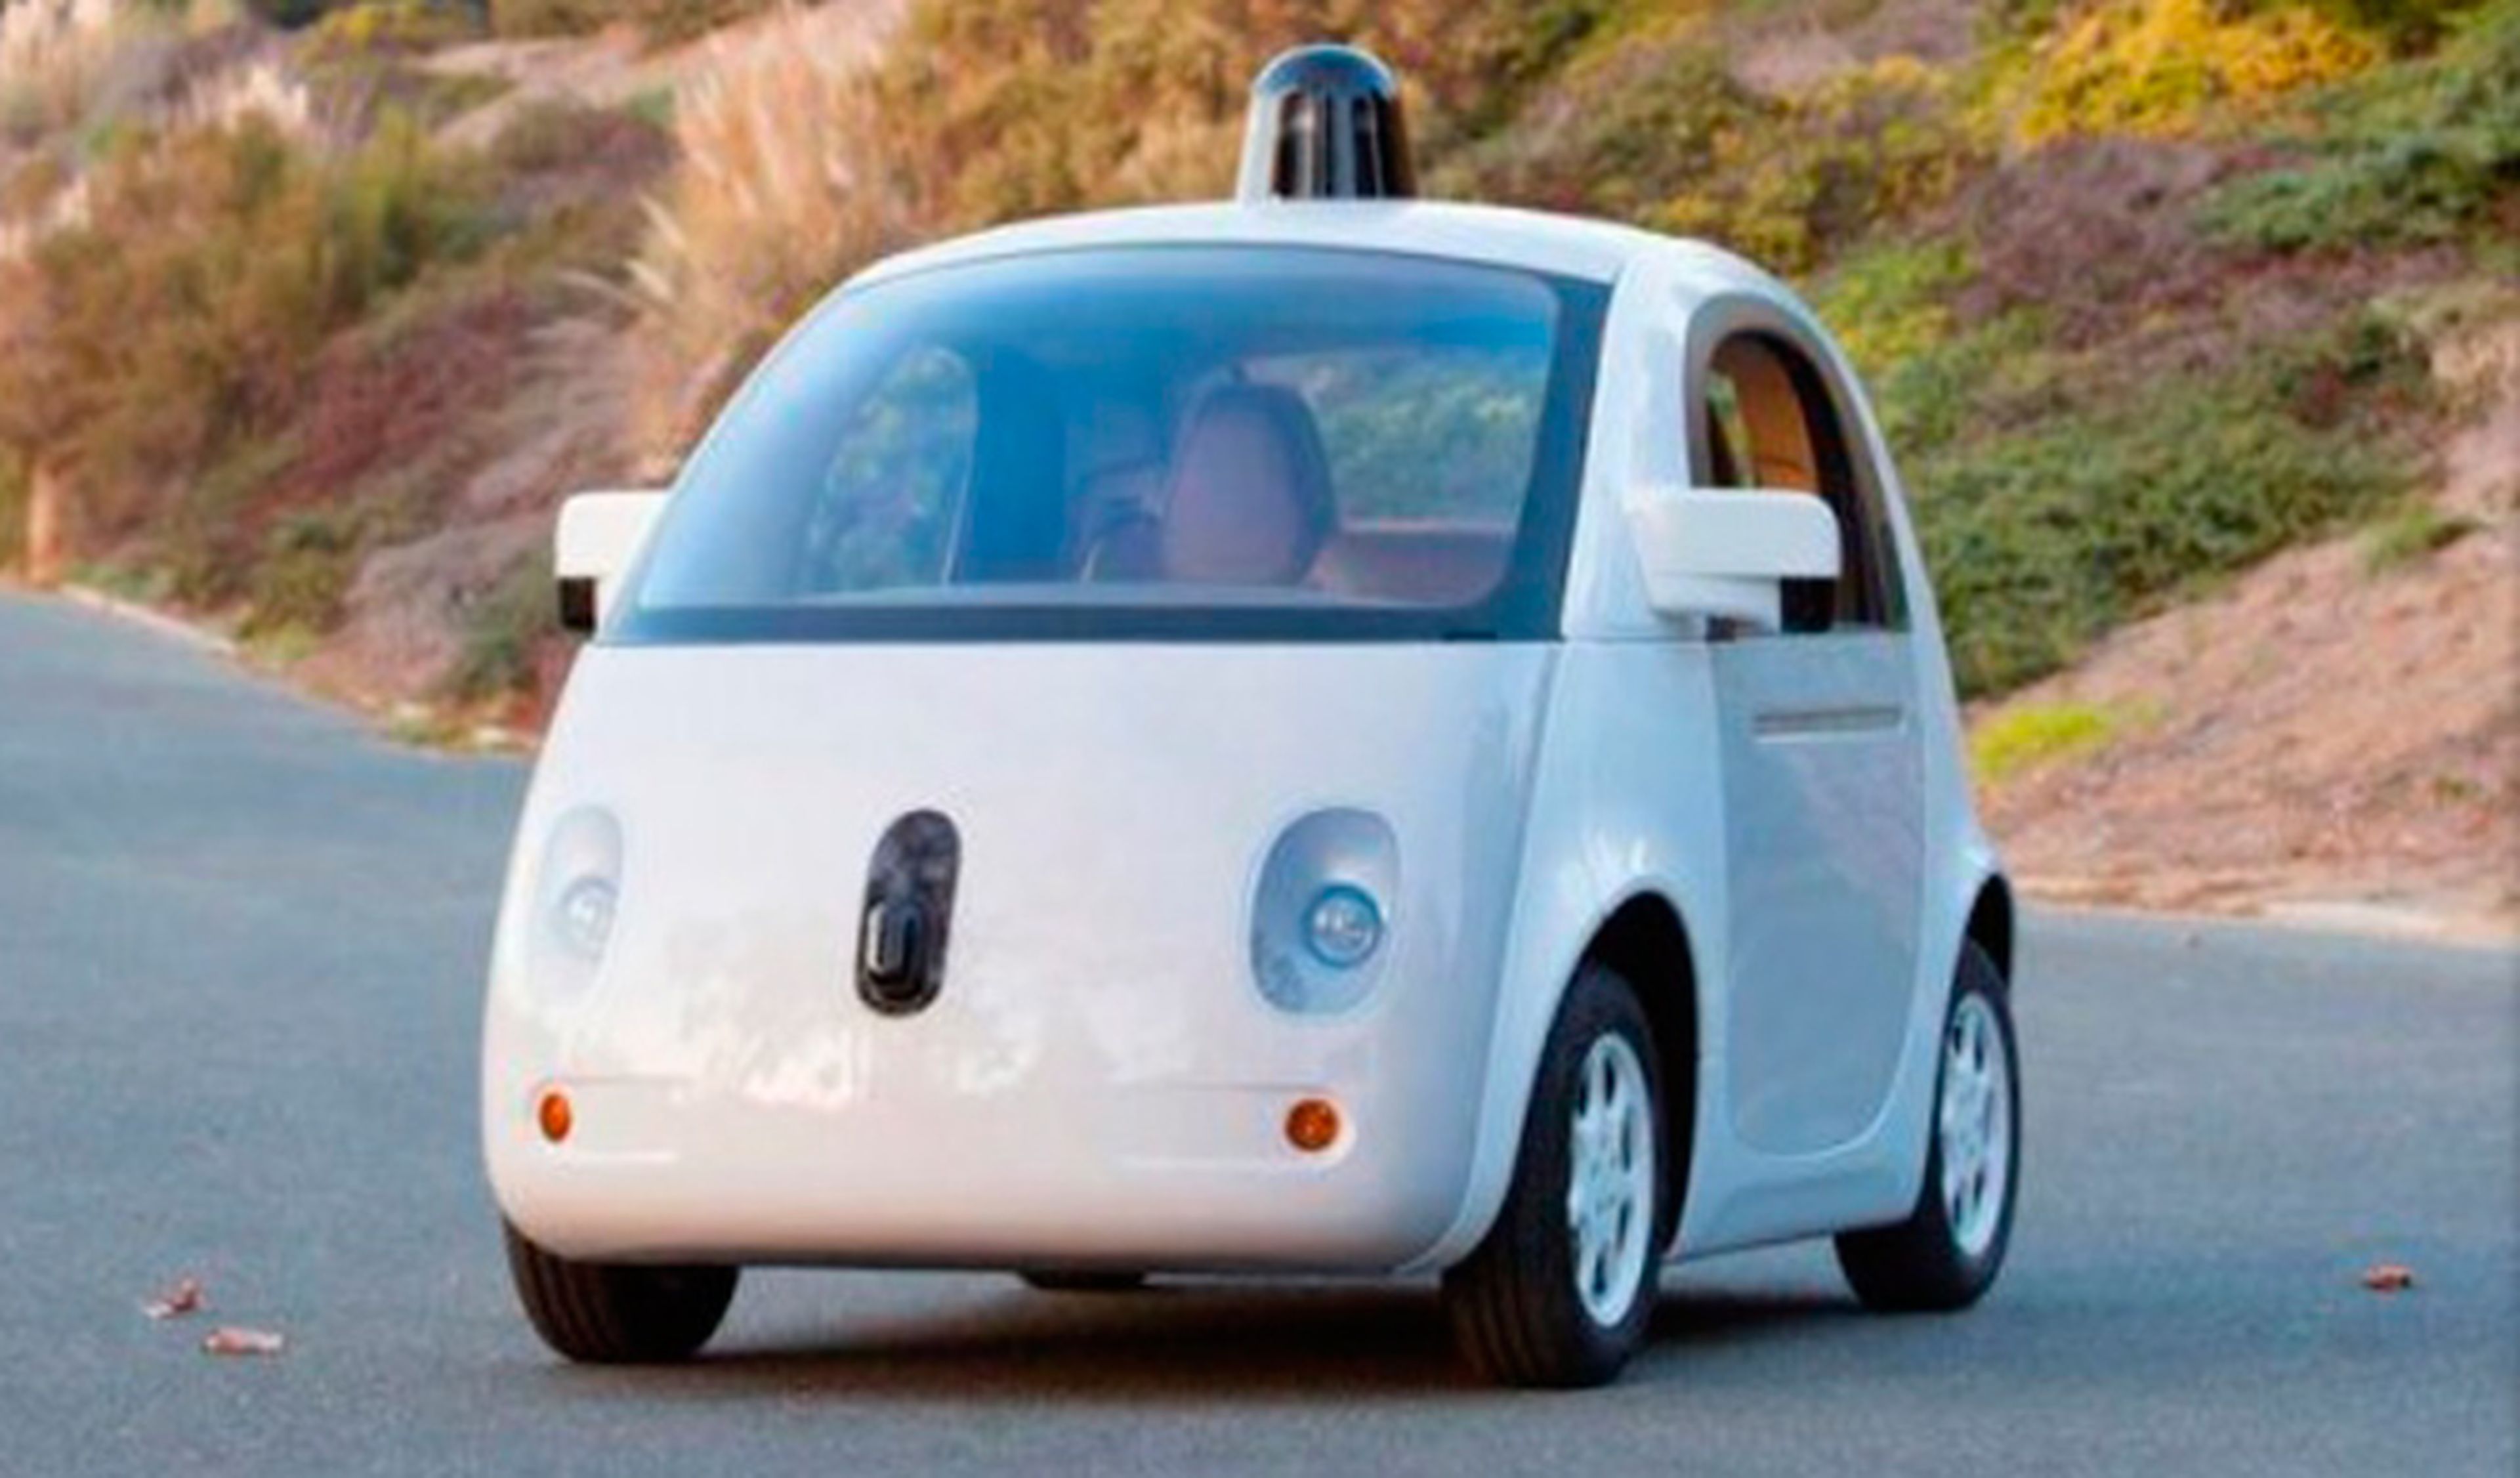 Ventajas y contras que ofrecerá el coche autónomo de Google